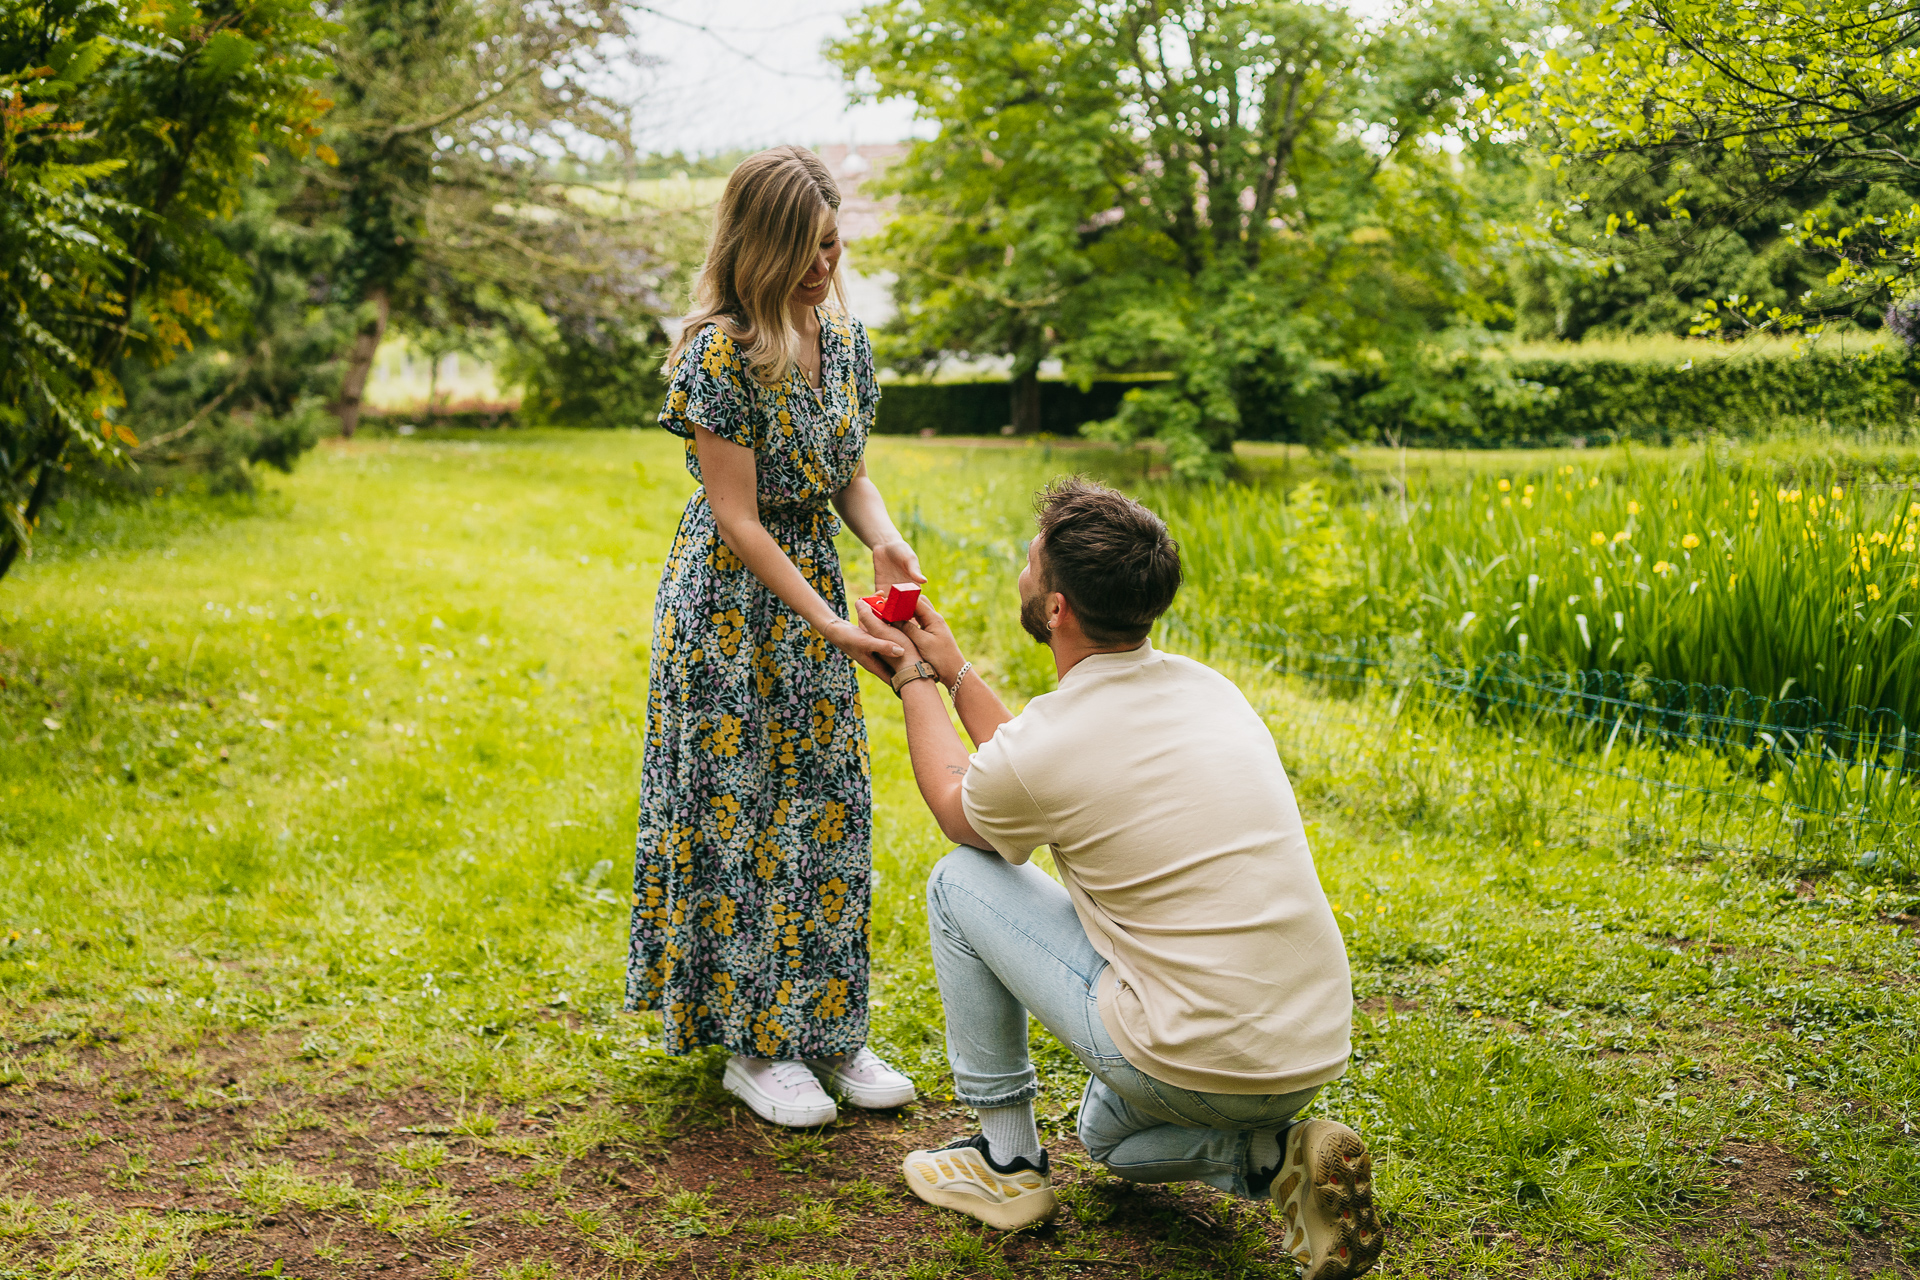 Un homme s'agenouillant pour proposer à une femme dans un champ.